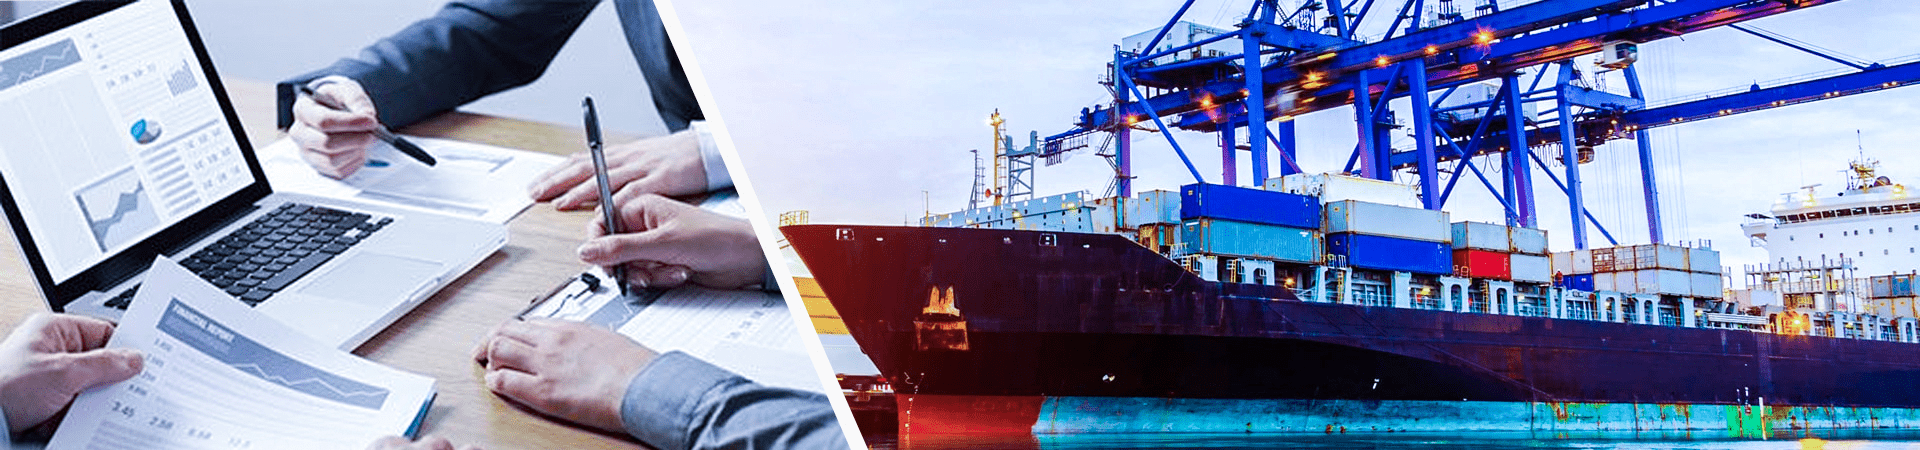 ocean-freight-shipping-bpo-services